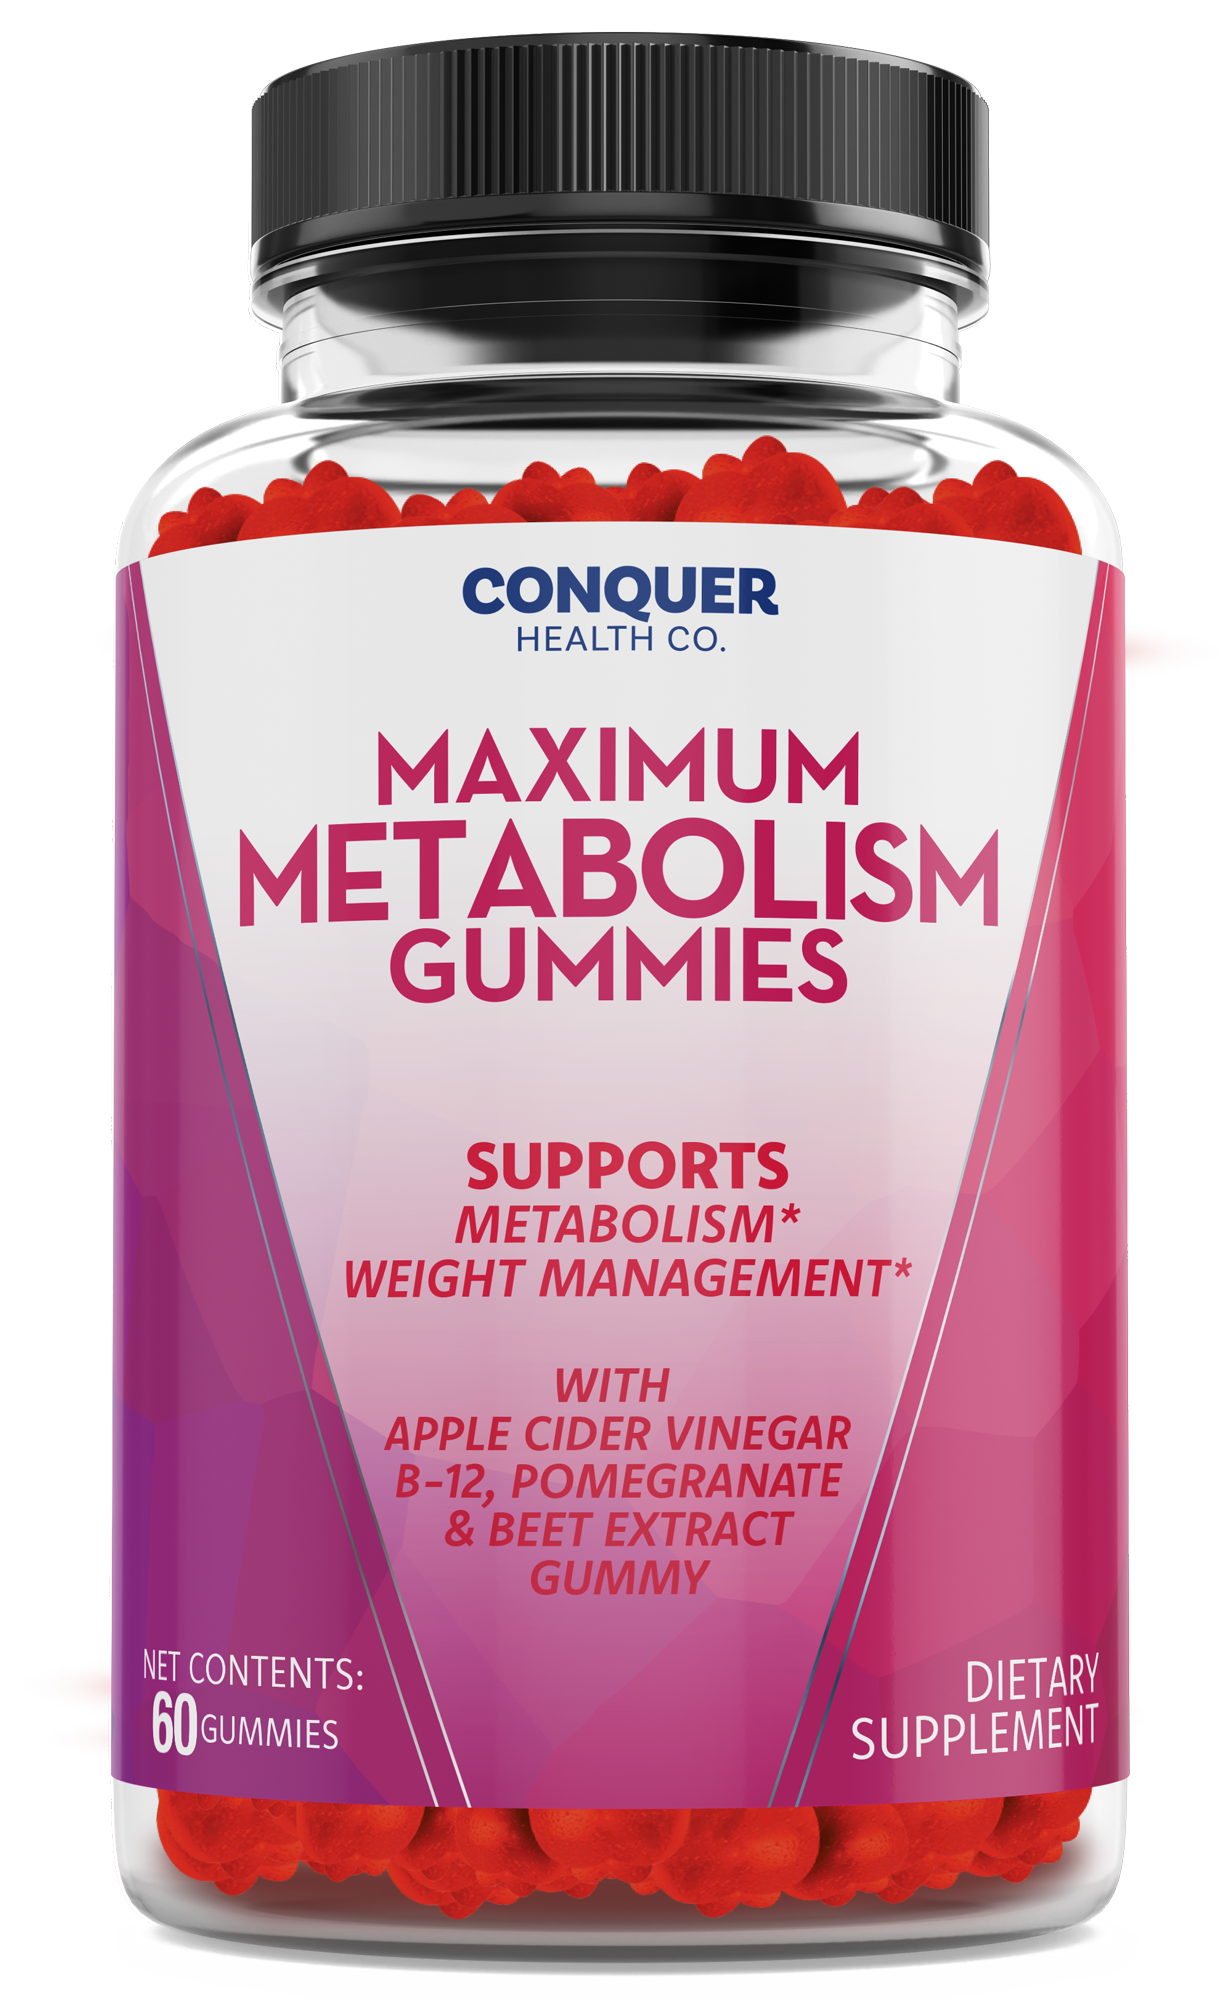 Maximum Metabolism Gummies